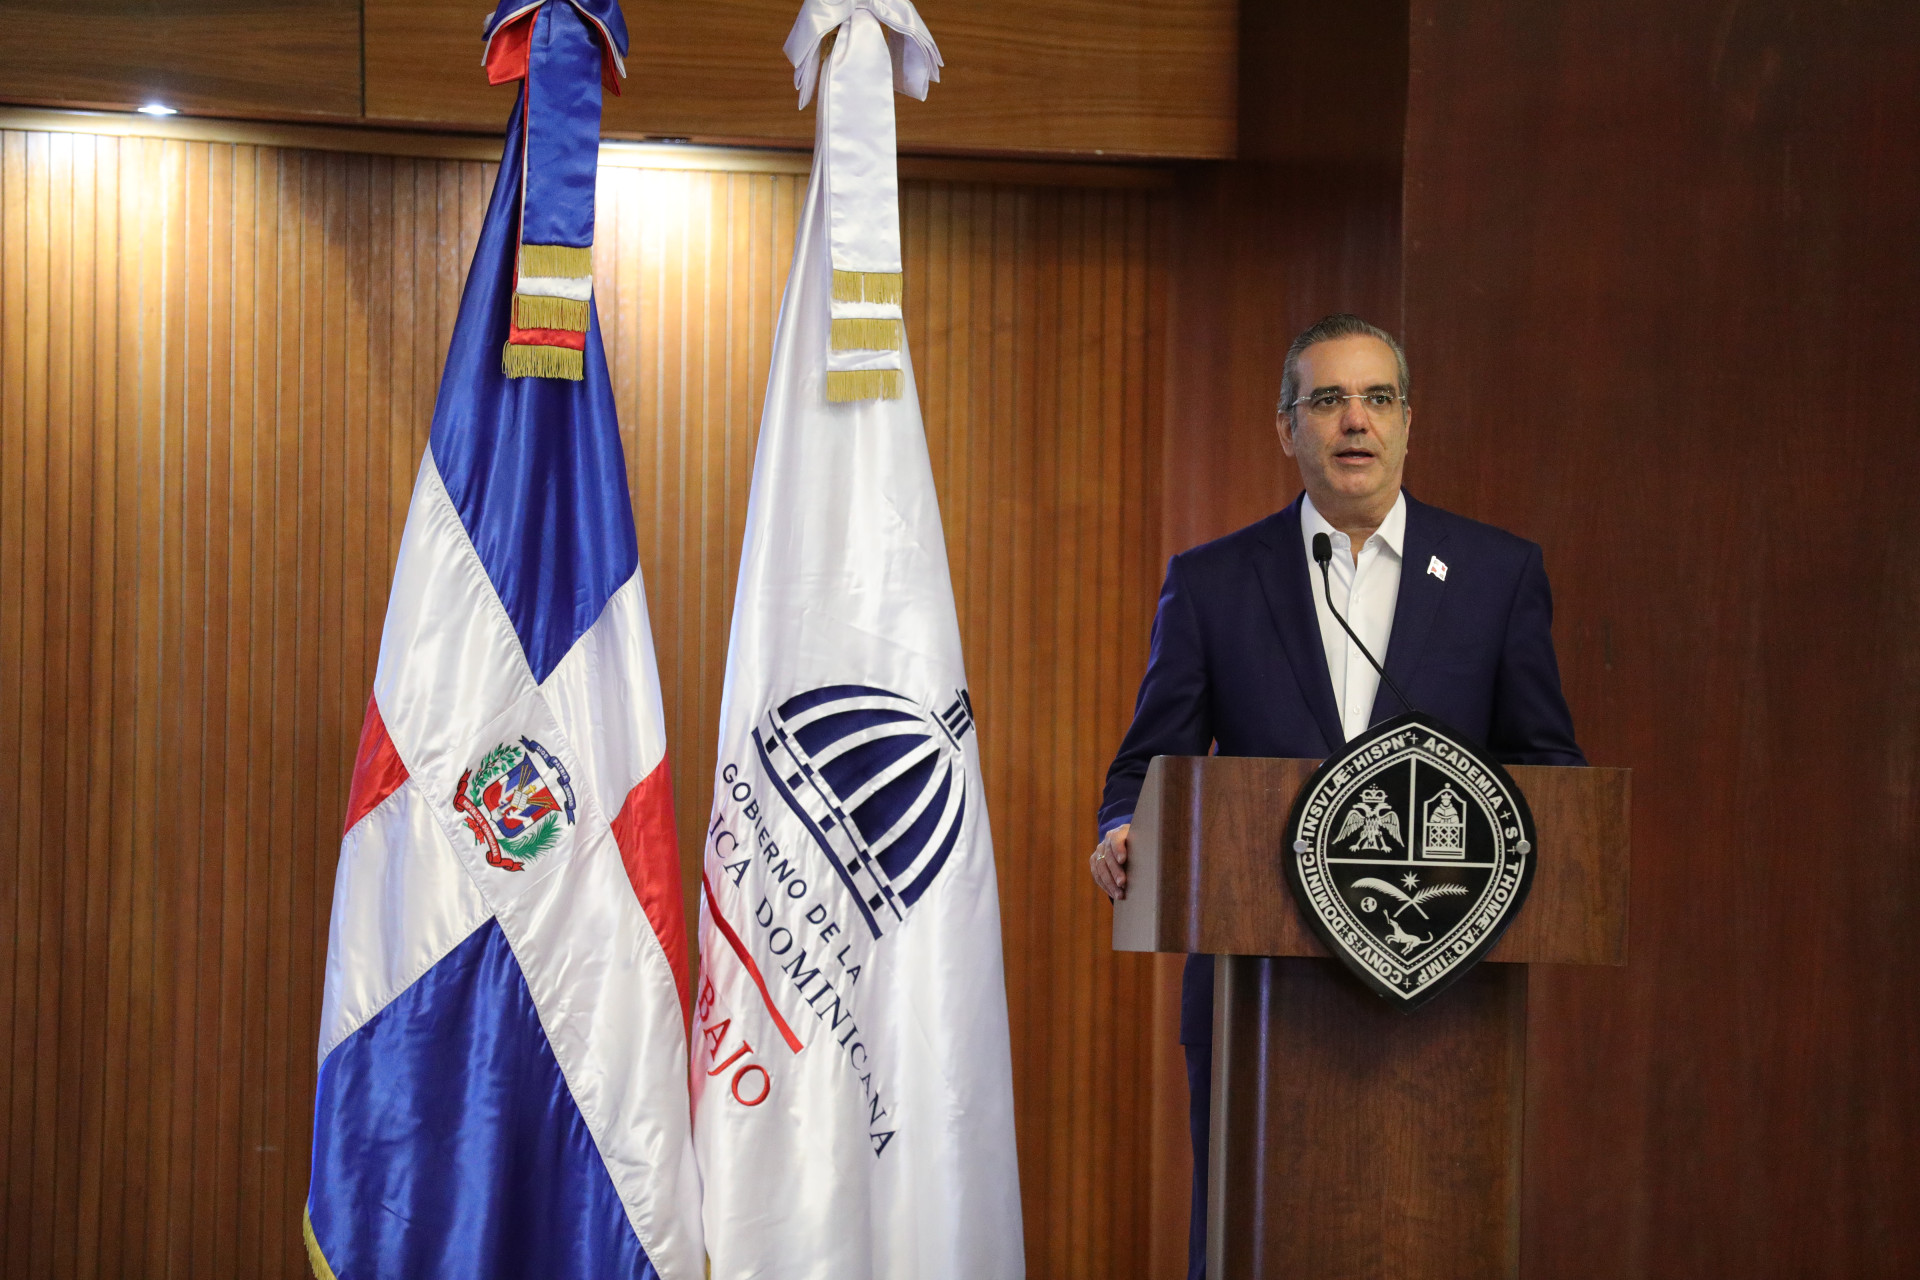 REPÚBLICA DOMINICANA: Presidente Abinader presenta pacto social que busca desarrollar un modelo sostenible, justo e inclusivo para todos los dominicanos